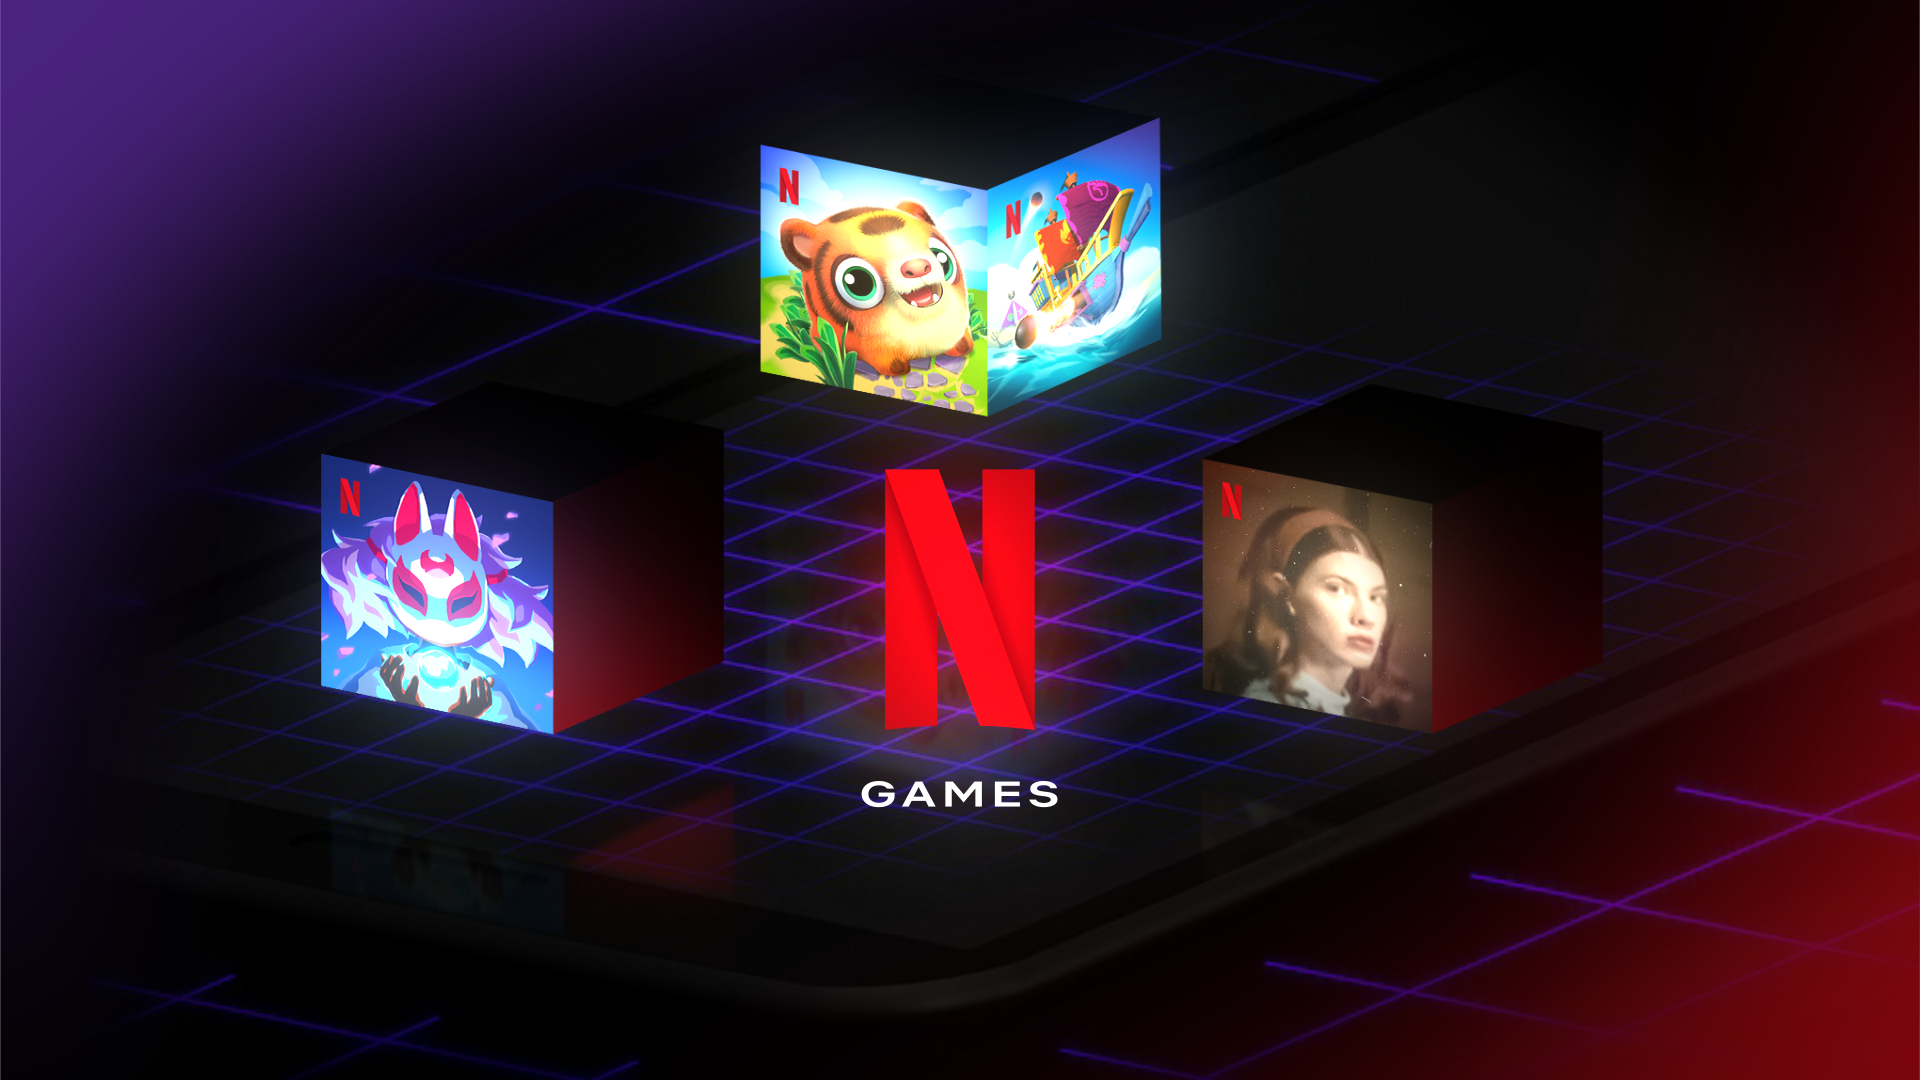 Novos jogos para aparelhos móveis chegam à Netflix em maio - About Netflix